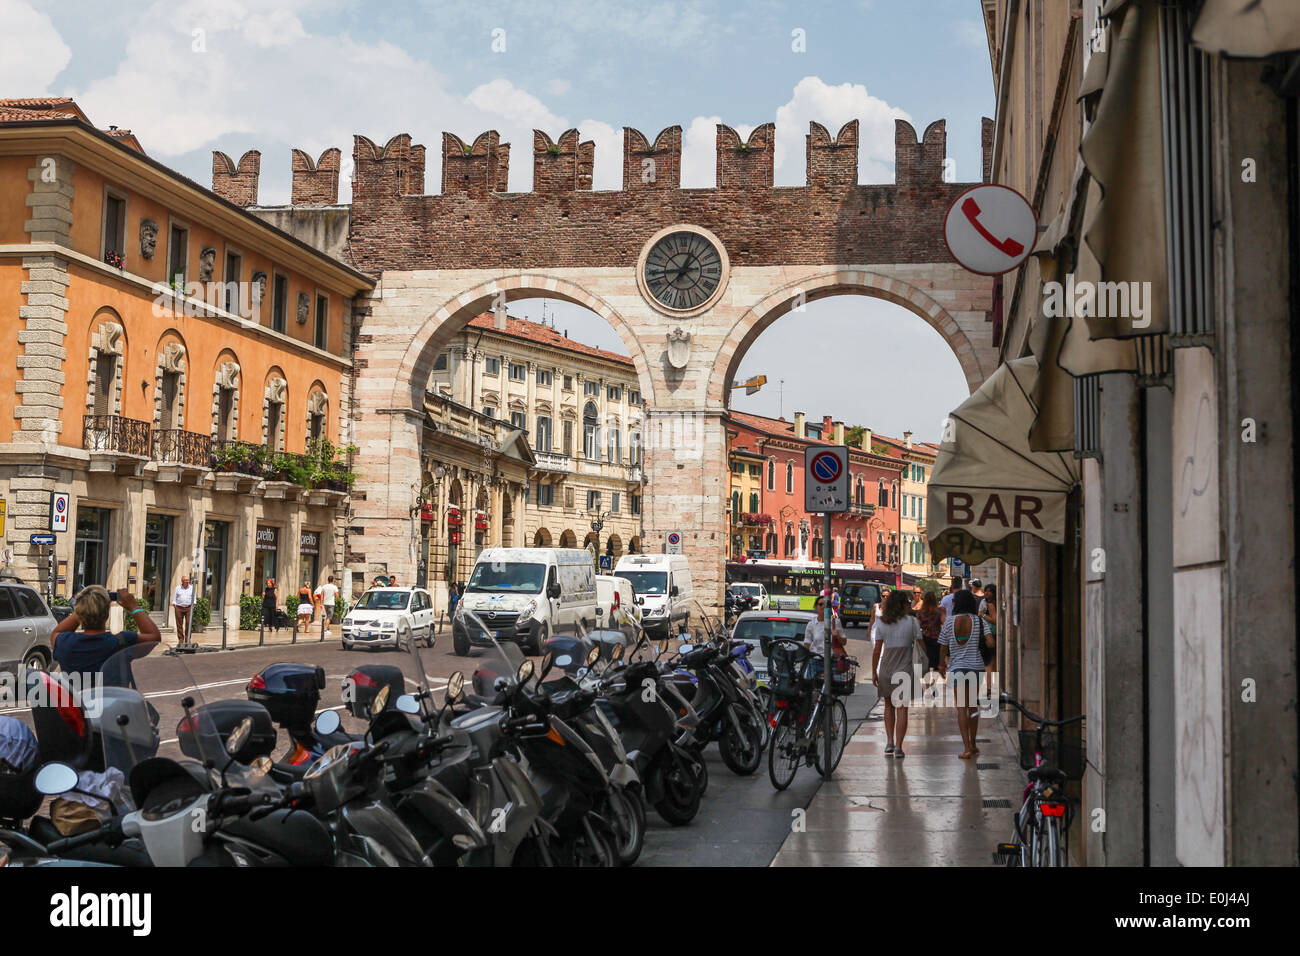 Strada trafficata in Verona con Portoni della Brà, porta medievale che conduce a Piazza Bra nel centro storico della città. Foto Stock